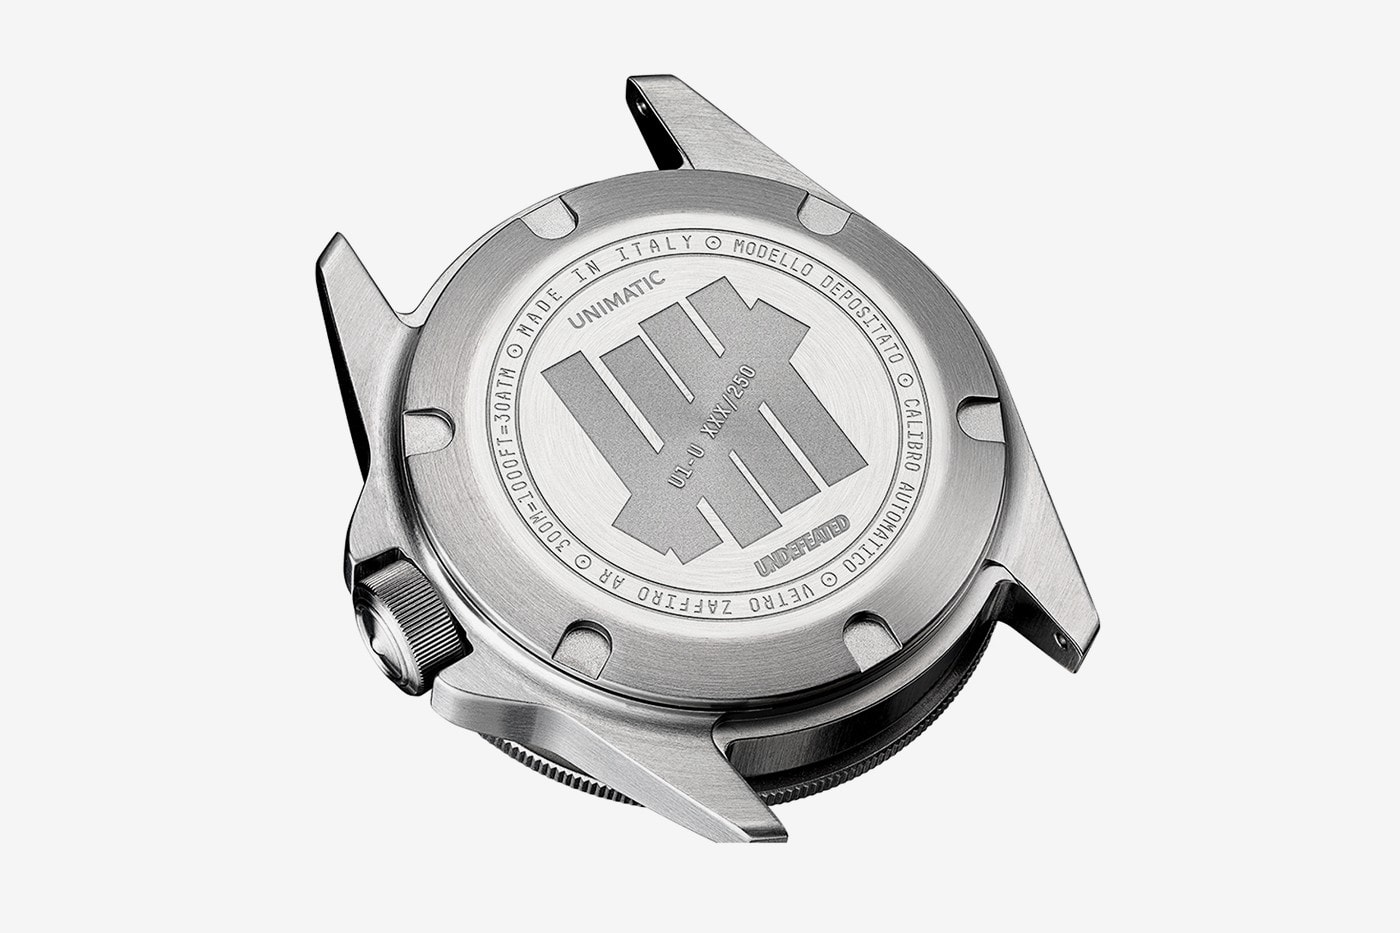 UNDEFEATED 攜手 Unimatic 推出全新 Modello Uno 潛水錶